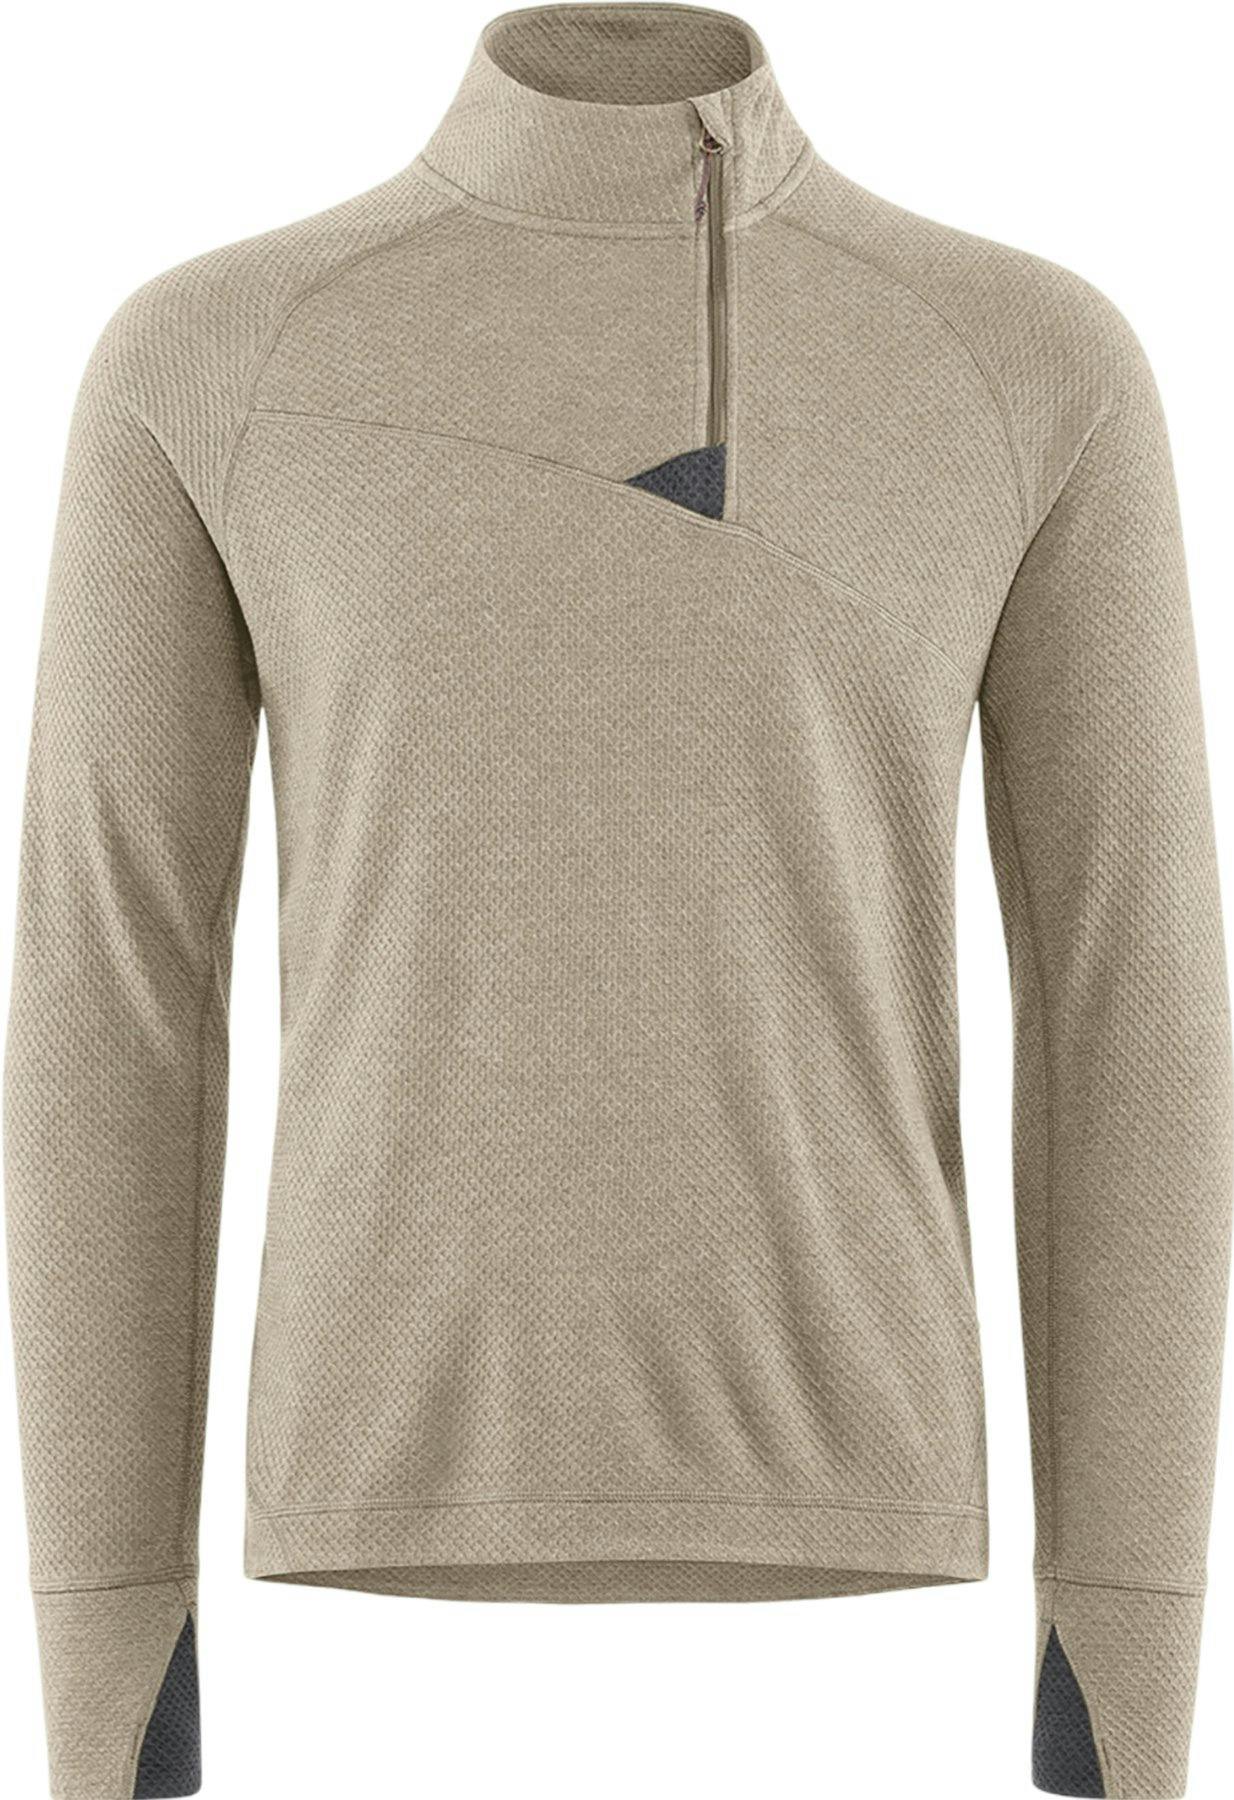 Product image for Huge Half Zip Sweater - Men's